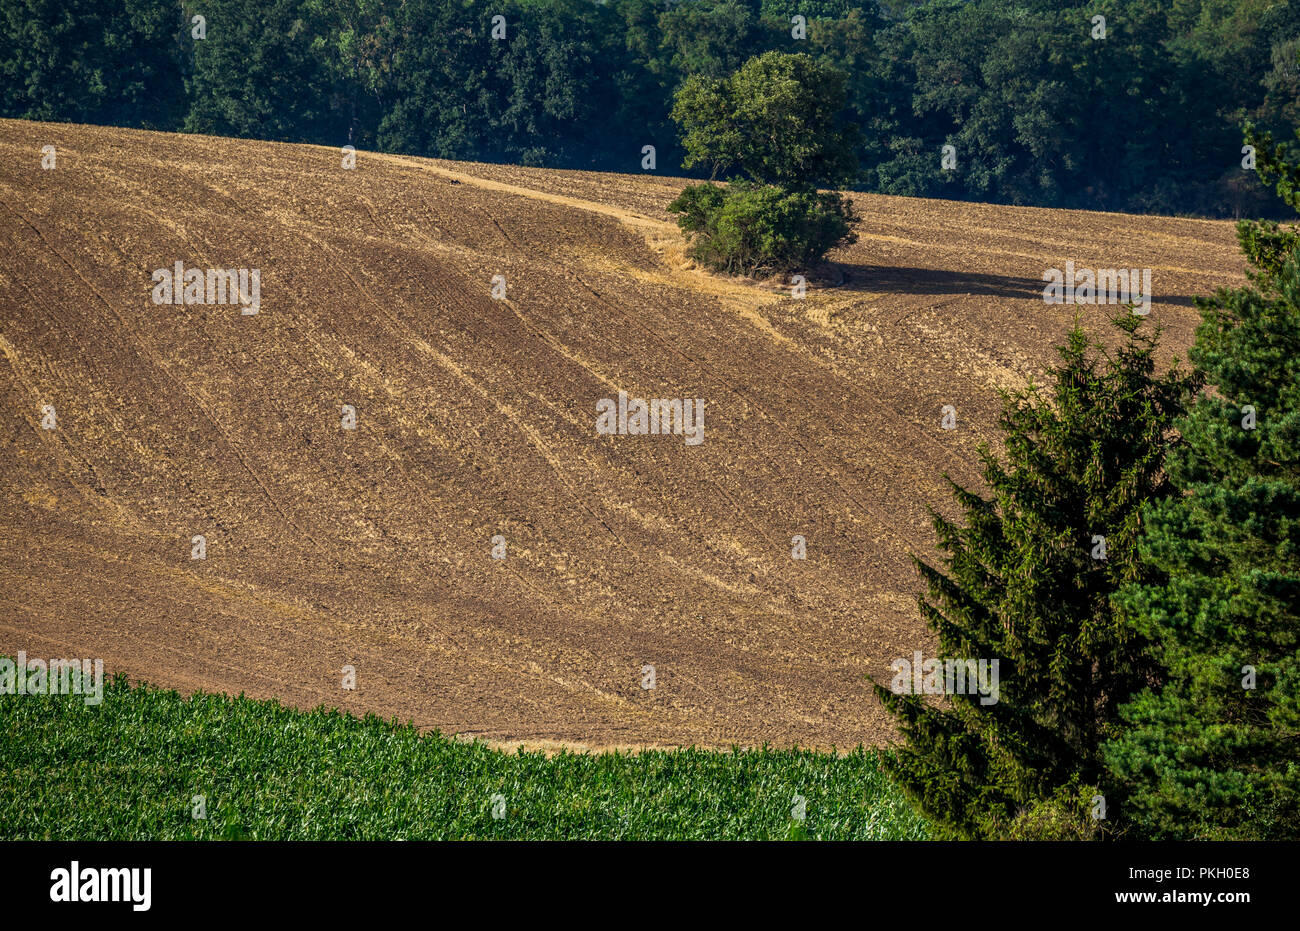 Il paesaggio agricolo sul giorno di estate prima del tramonto. Le raccolte campo bruscamente definisce il campo verde del mais. Boemia centrale, Republ ceca Foto Stock